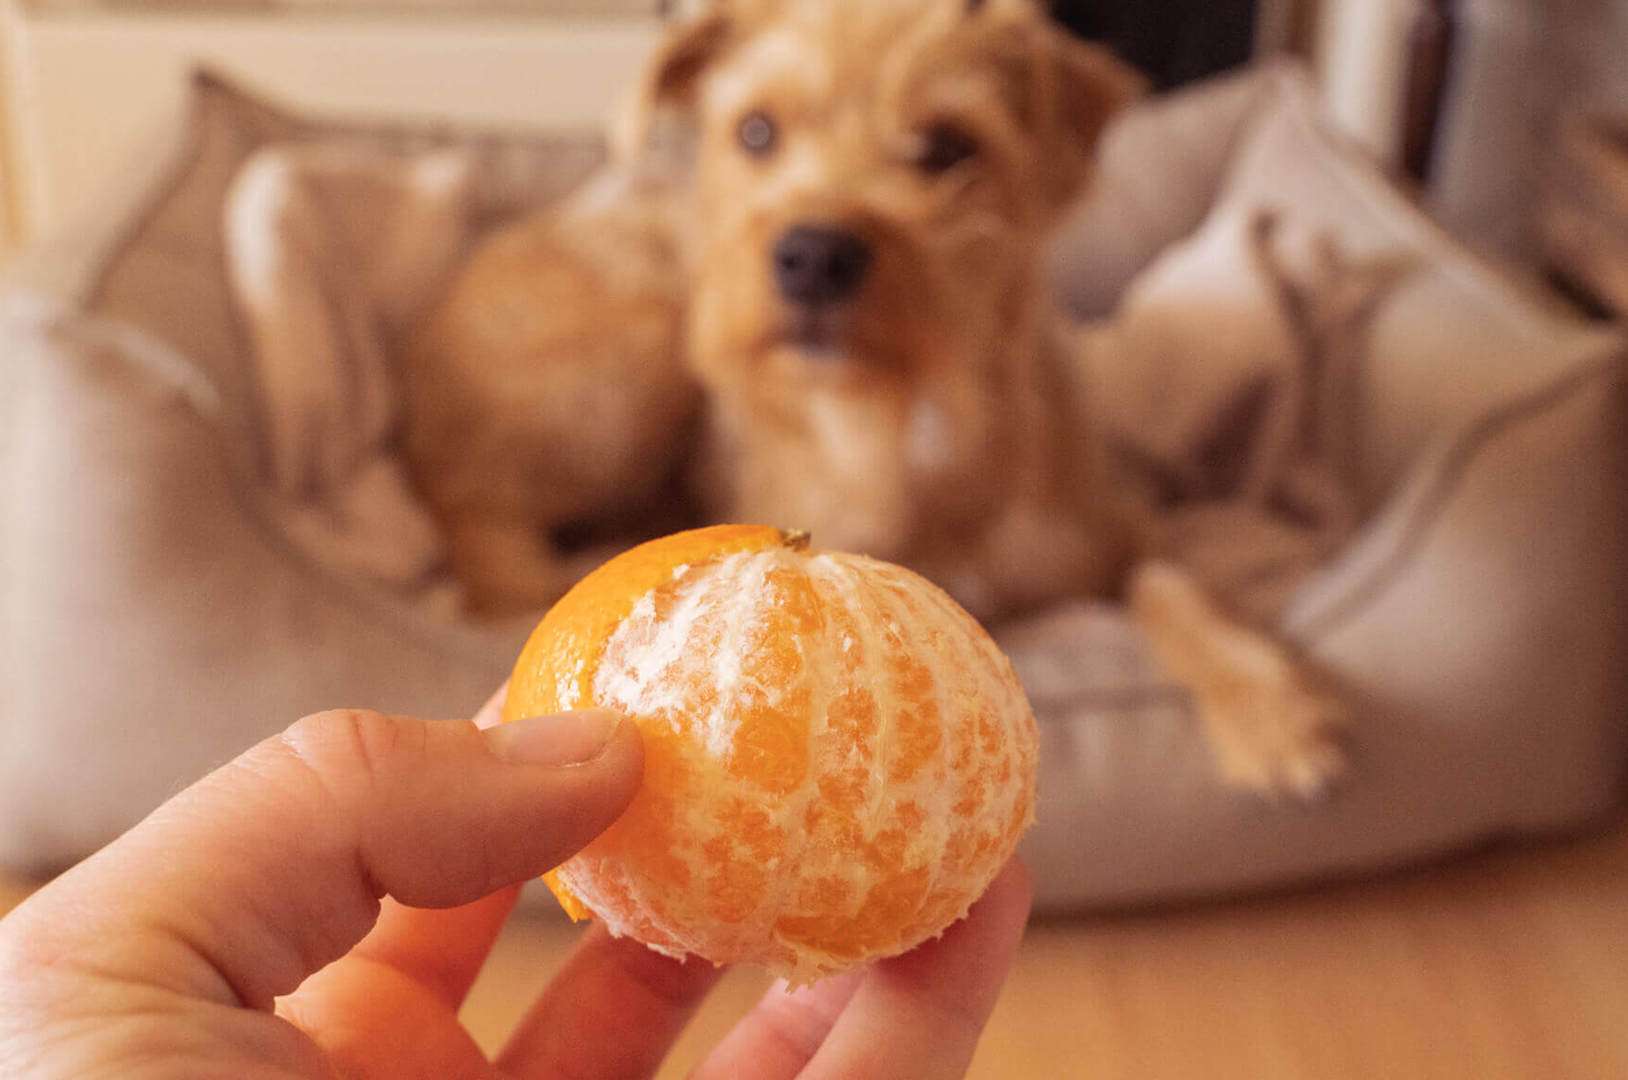 Dürfen Hunde Mandarinen essen und wenn ja, wie viele?